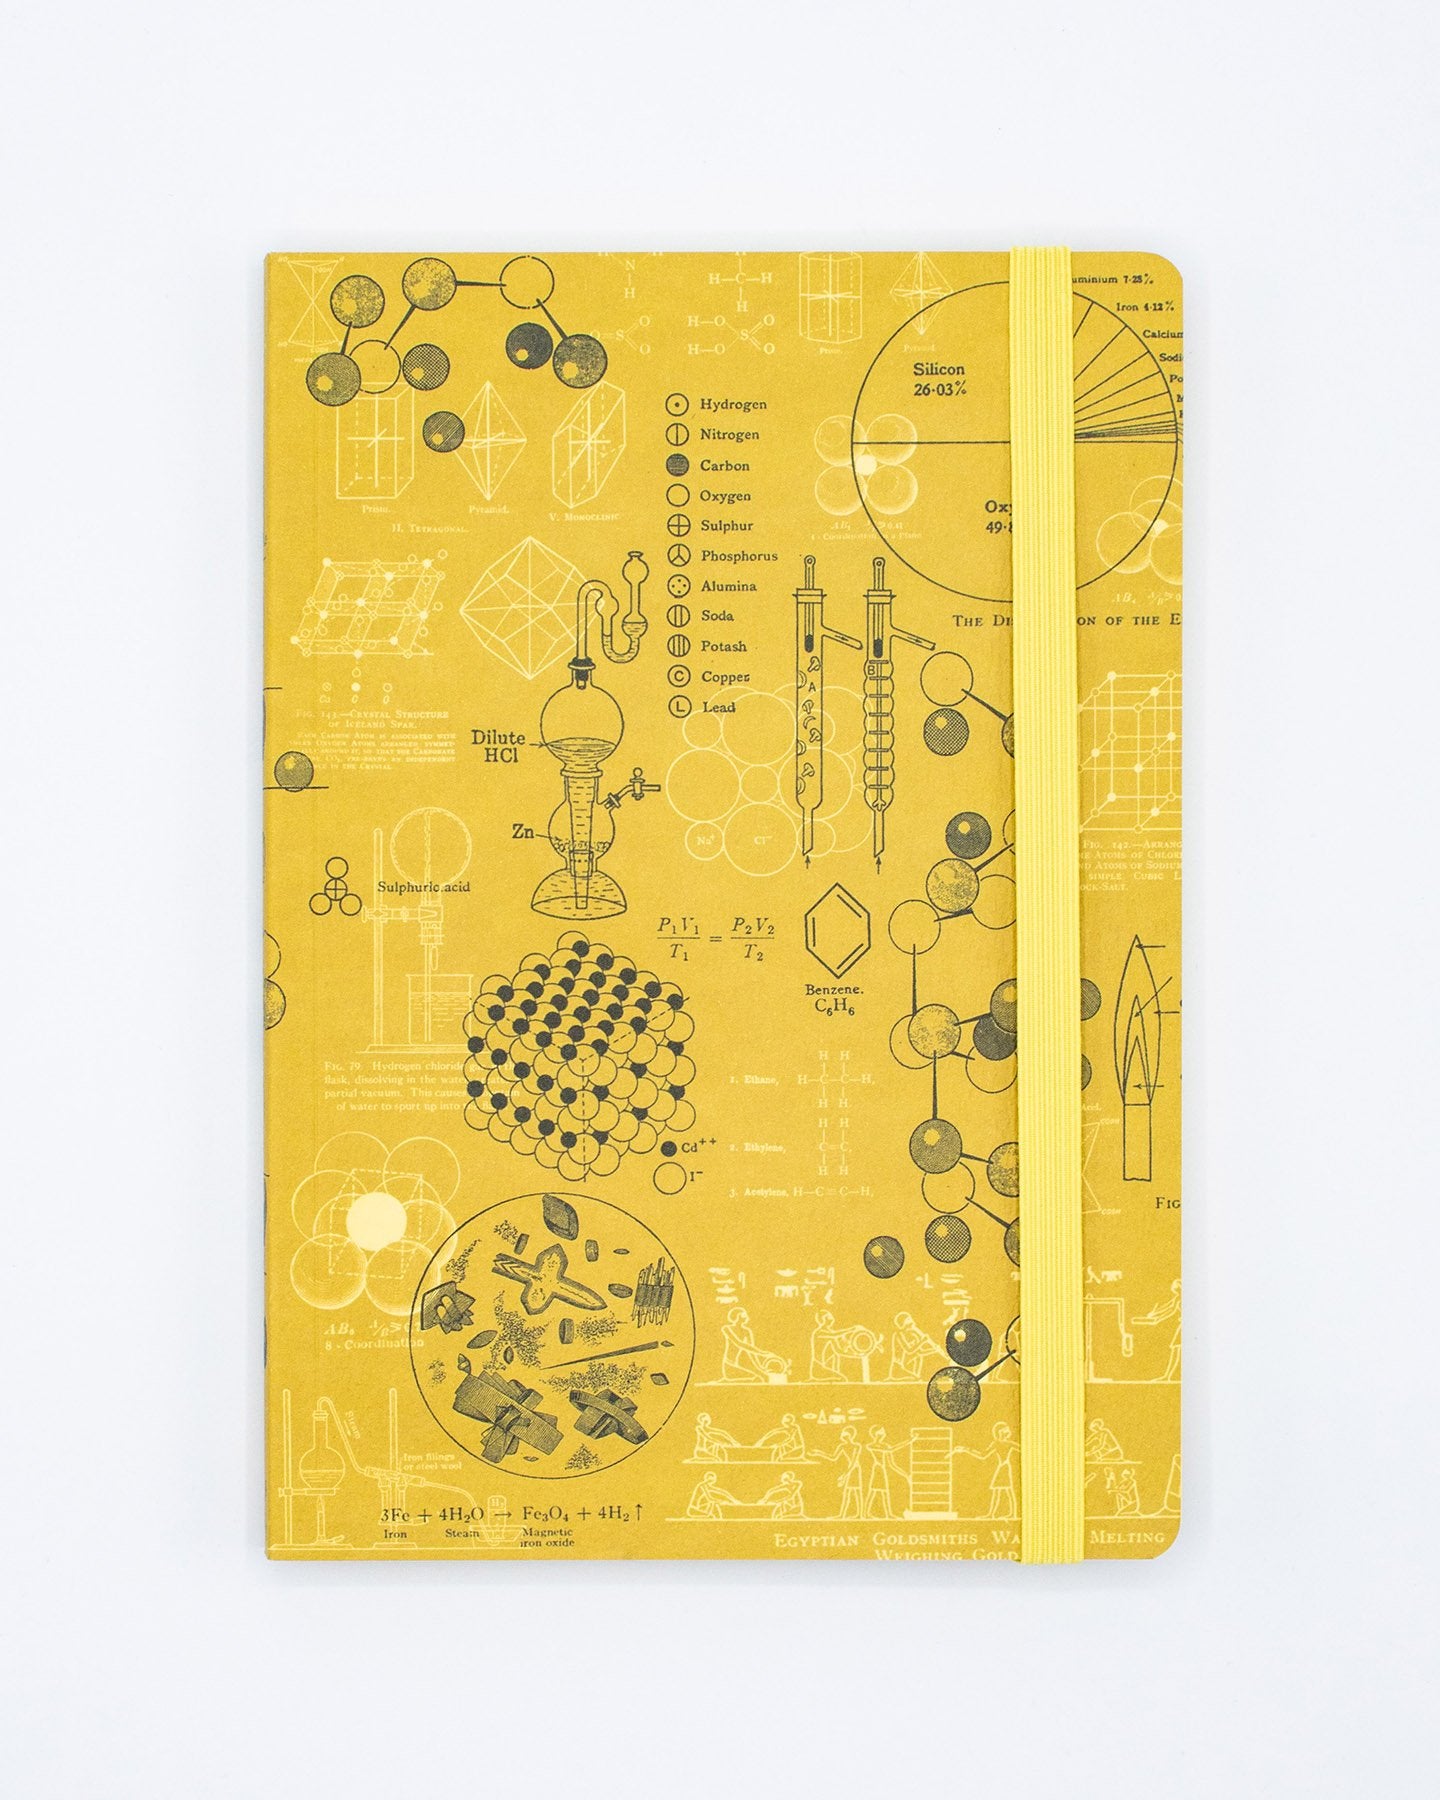 Atoma, Système Notebook, Smooth, A5